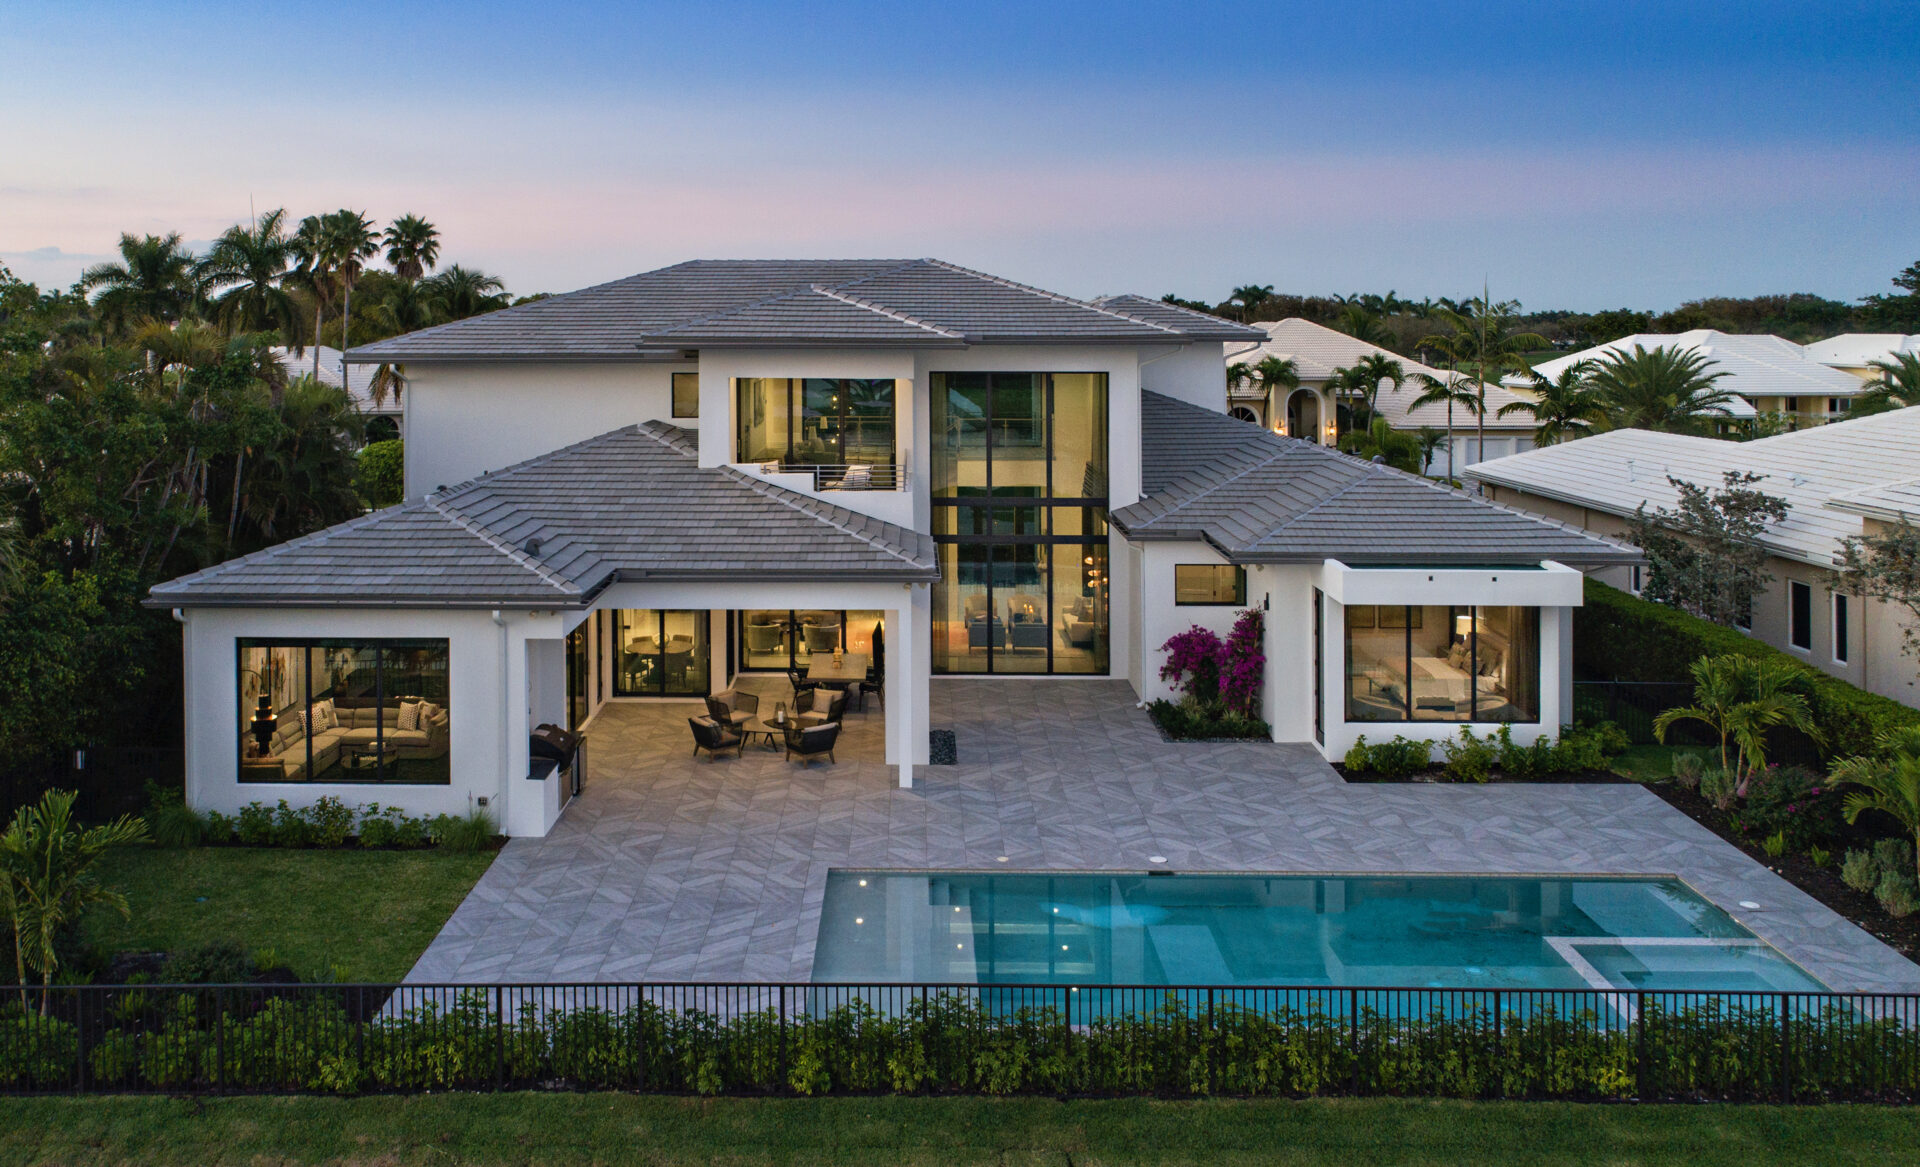 Boca Raton Luxury Home Design